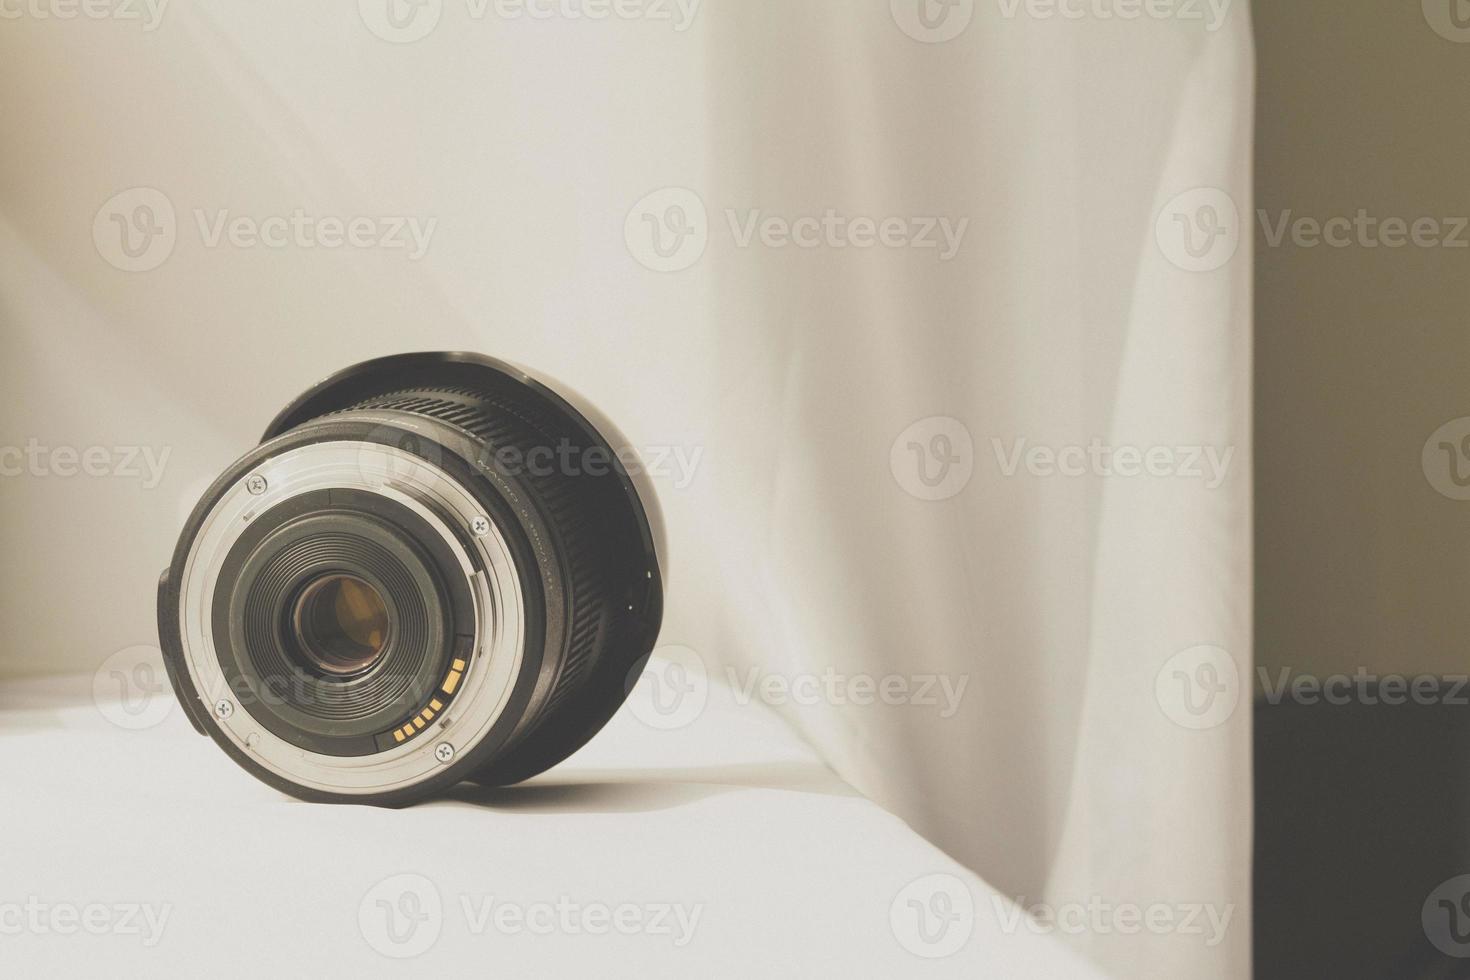 Objectif zoom de caméra noir sur tissu blanc photo